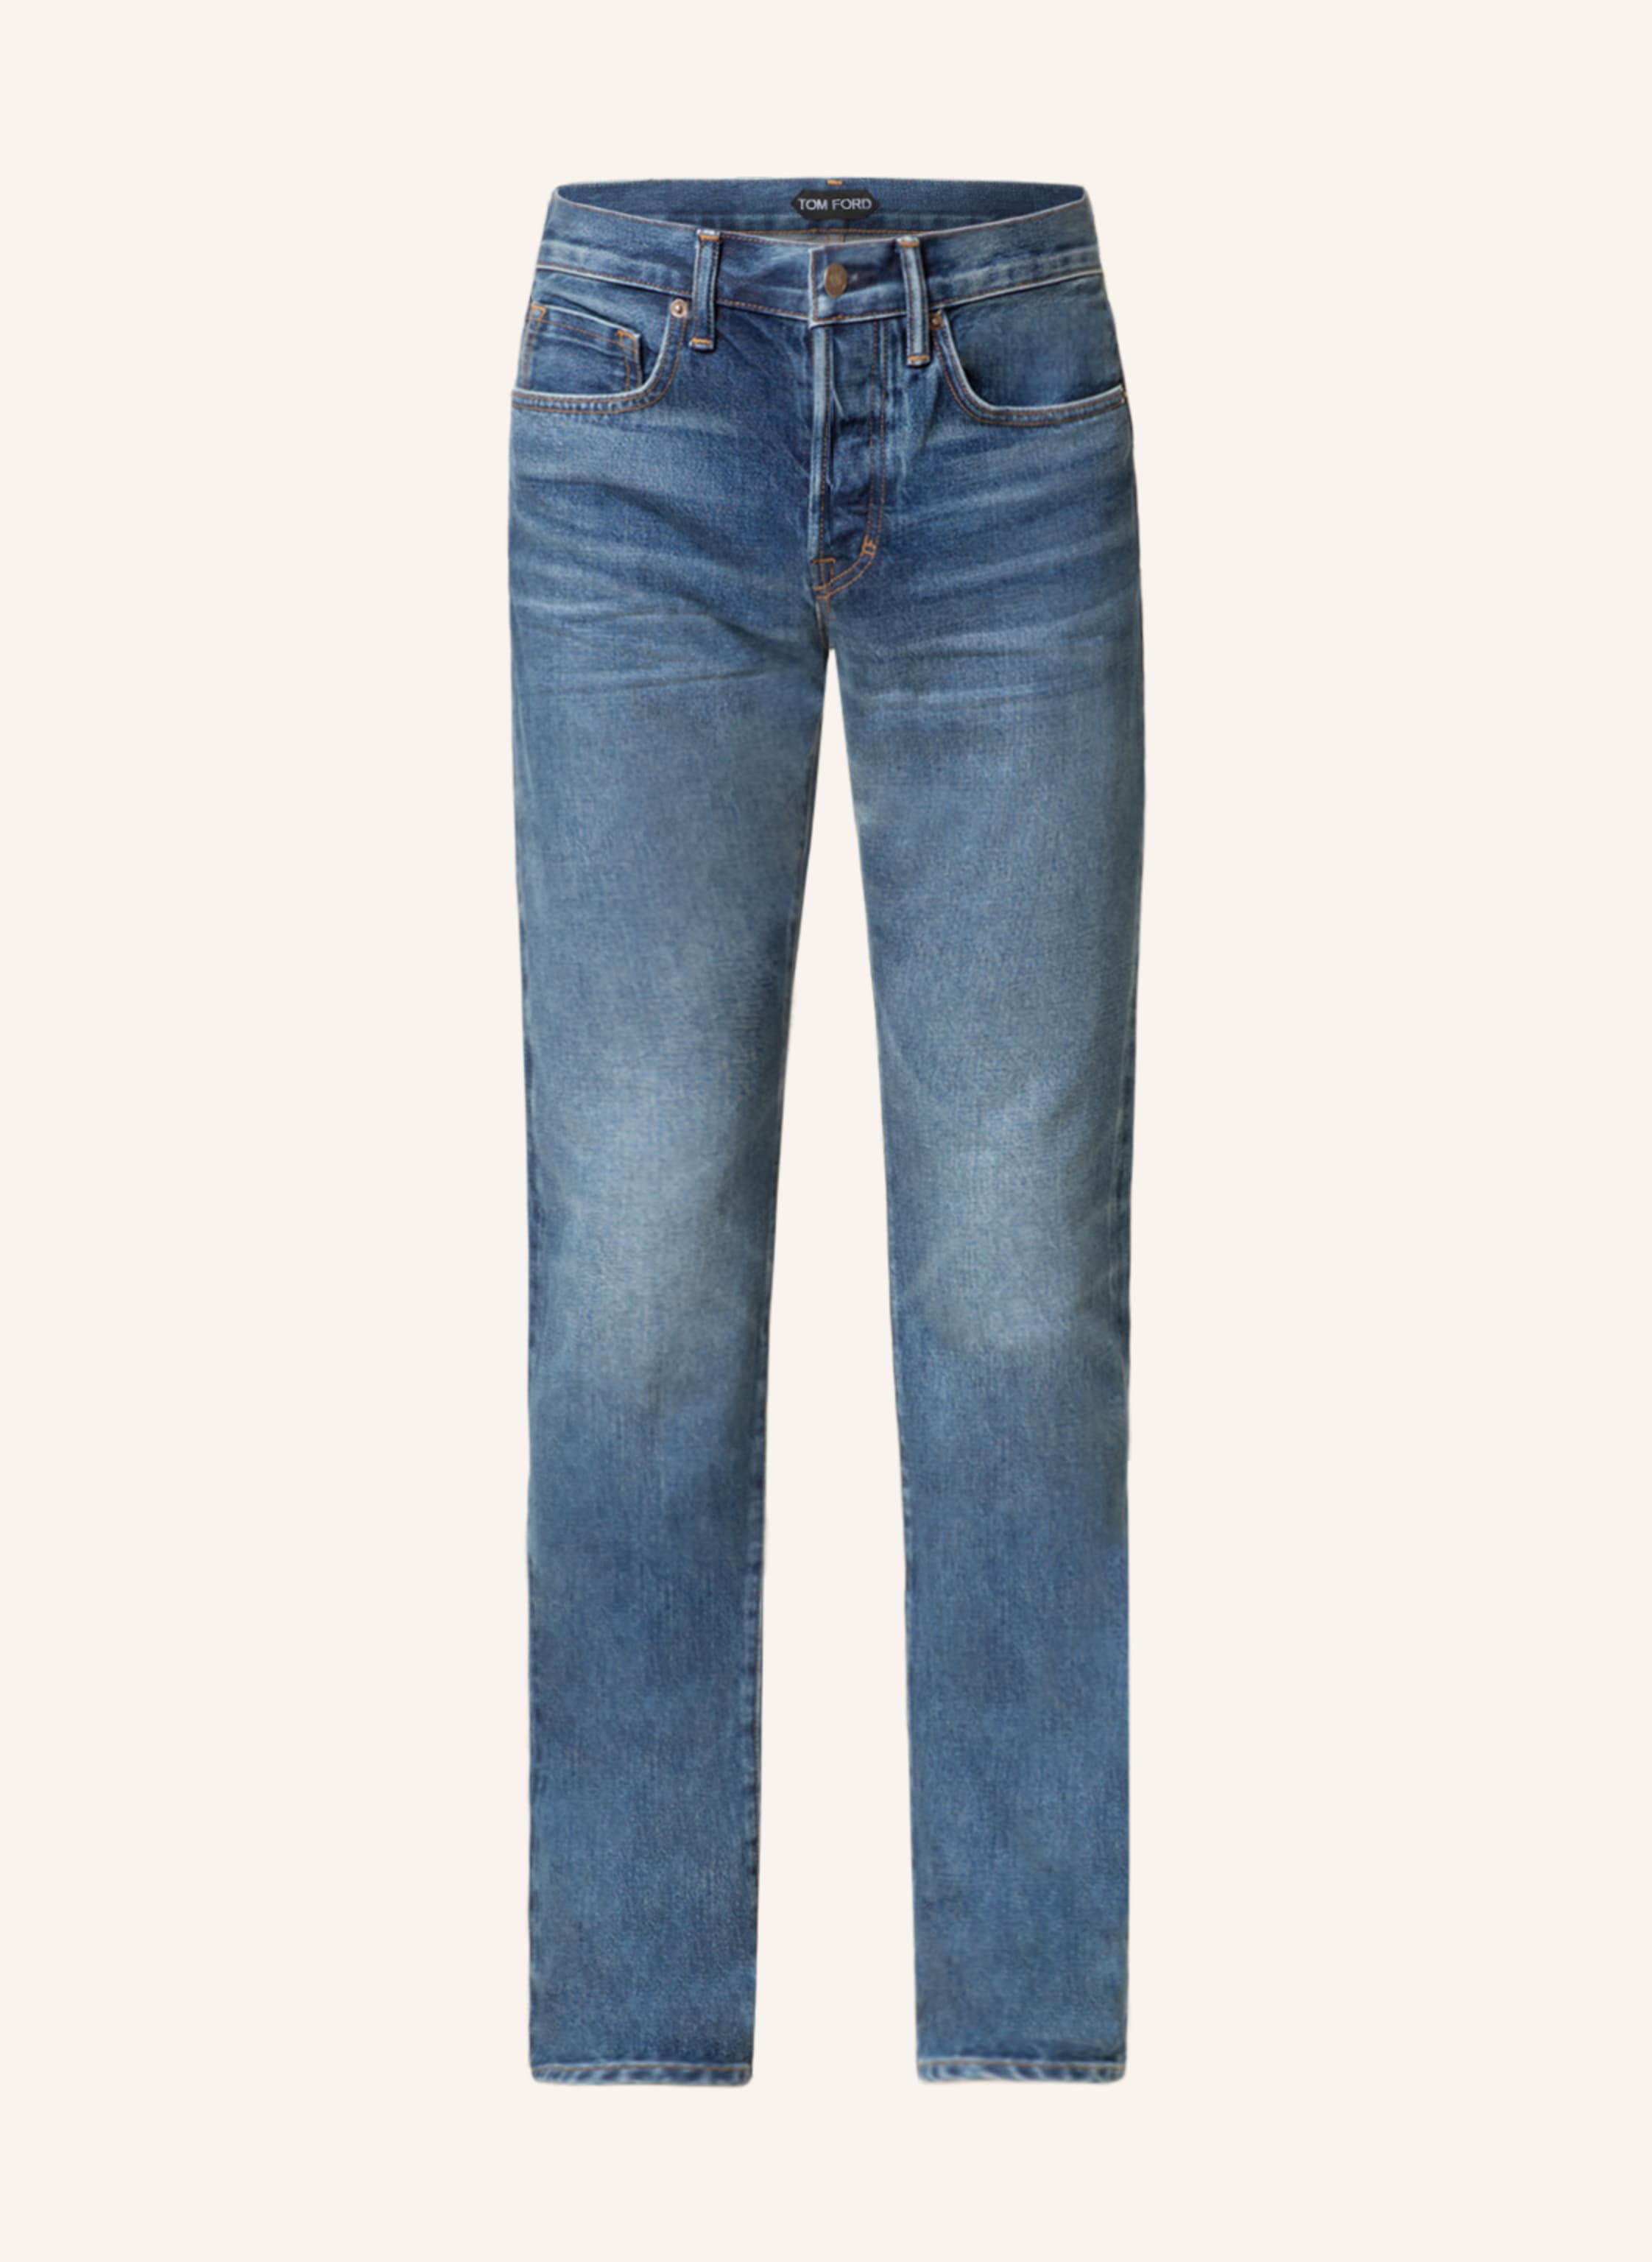 TOM FORD Jeans slim fit in b19 blue | Breuninger